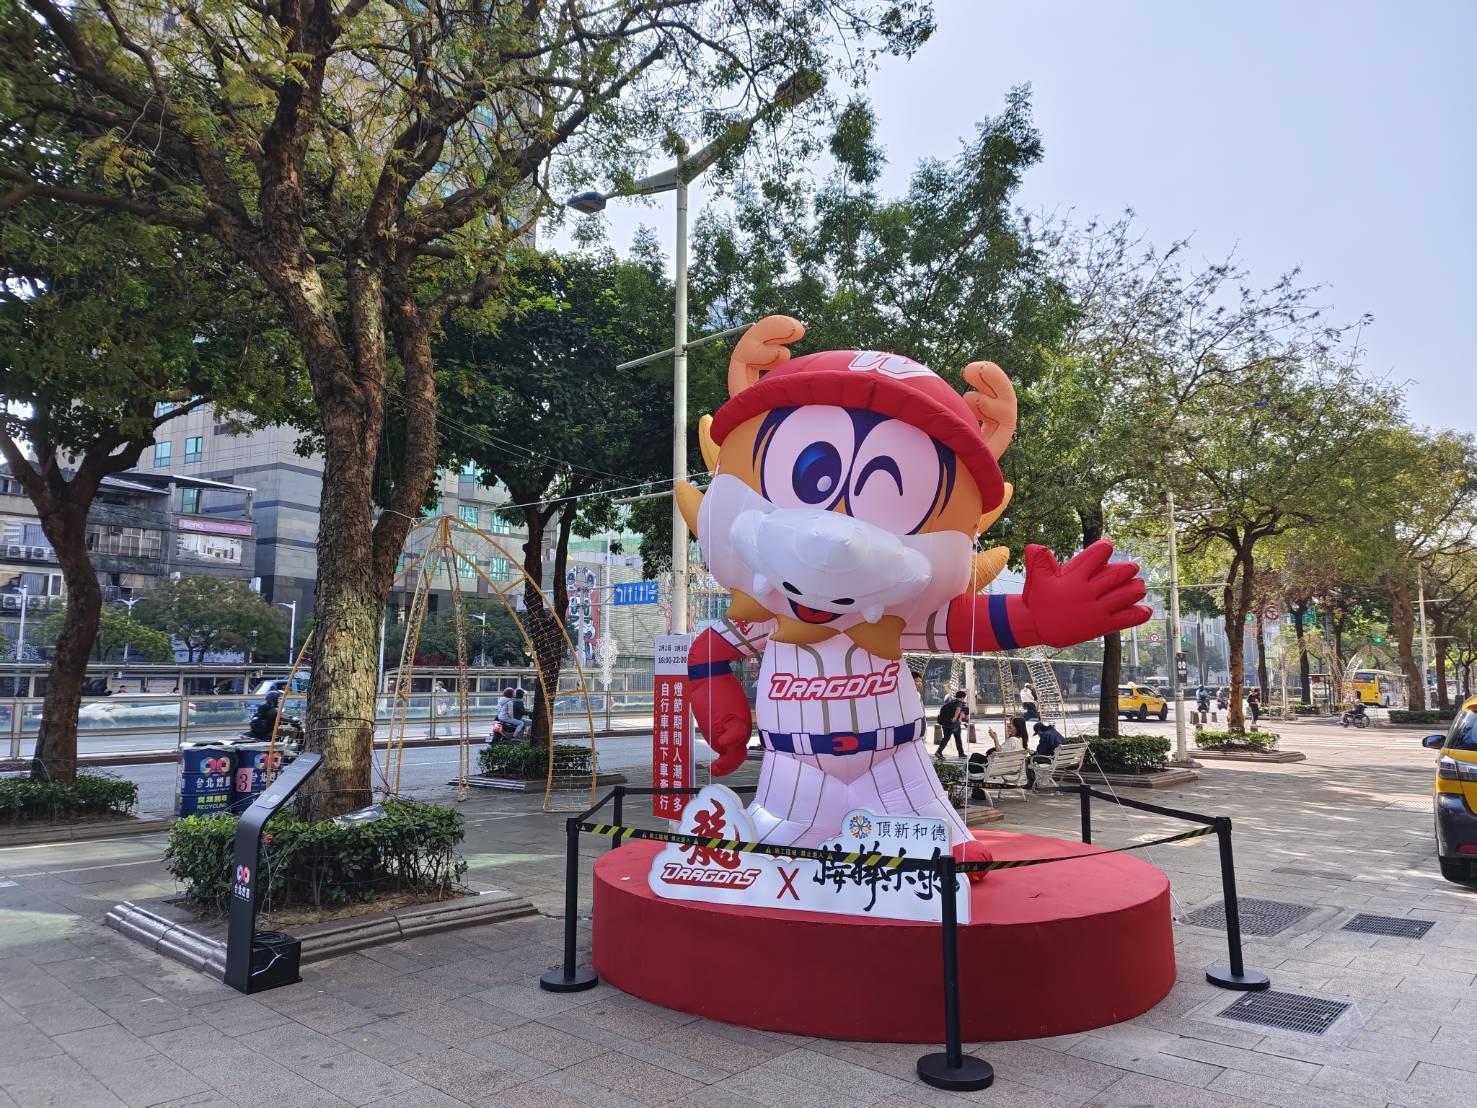 第一個以台北市為主場的職業棒球隊味全龍, 今年也展出吉祥物威弟造型燈組。圖/頂新和德文教基金會提供